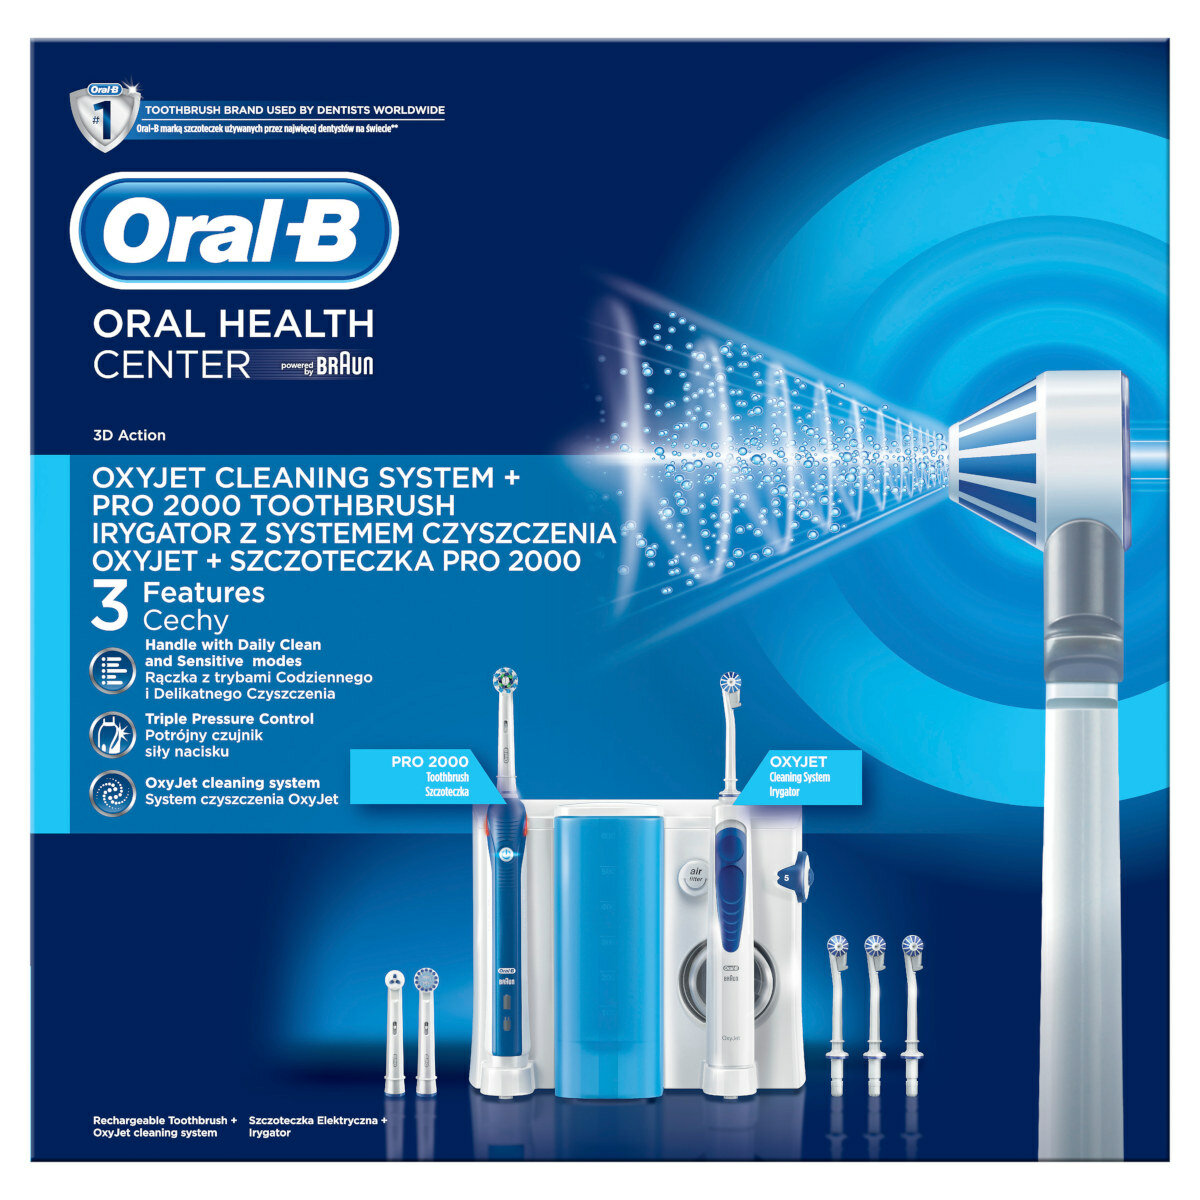 Irygator Oral B Oxyjet + szczoteczka Pro 2000 widok na opakowanie od frontu